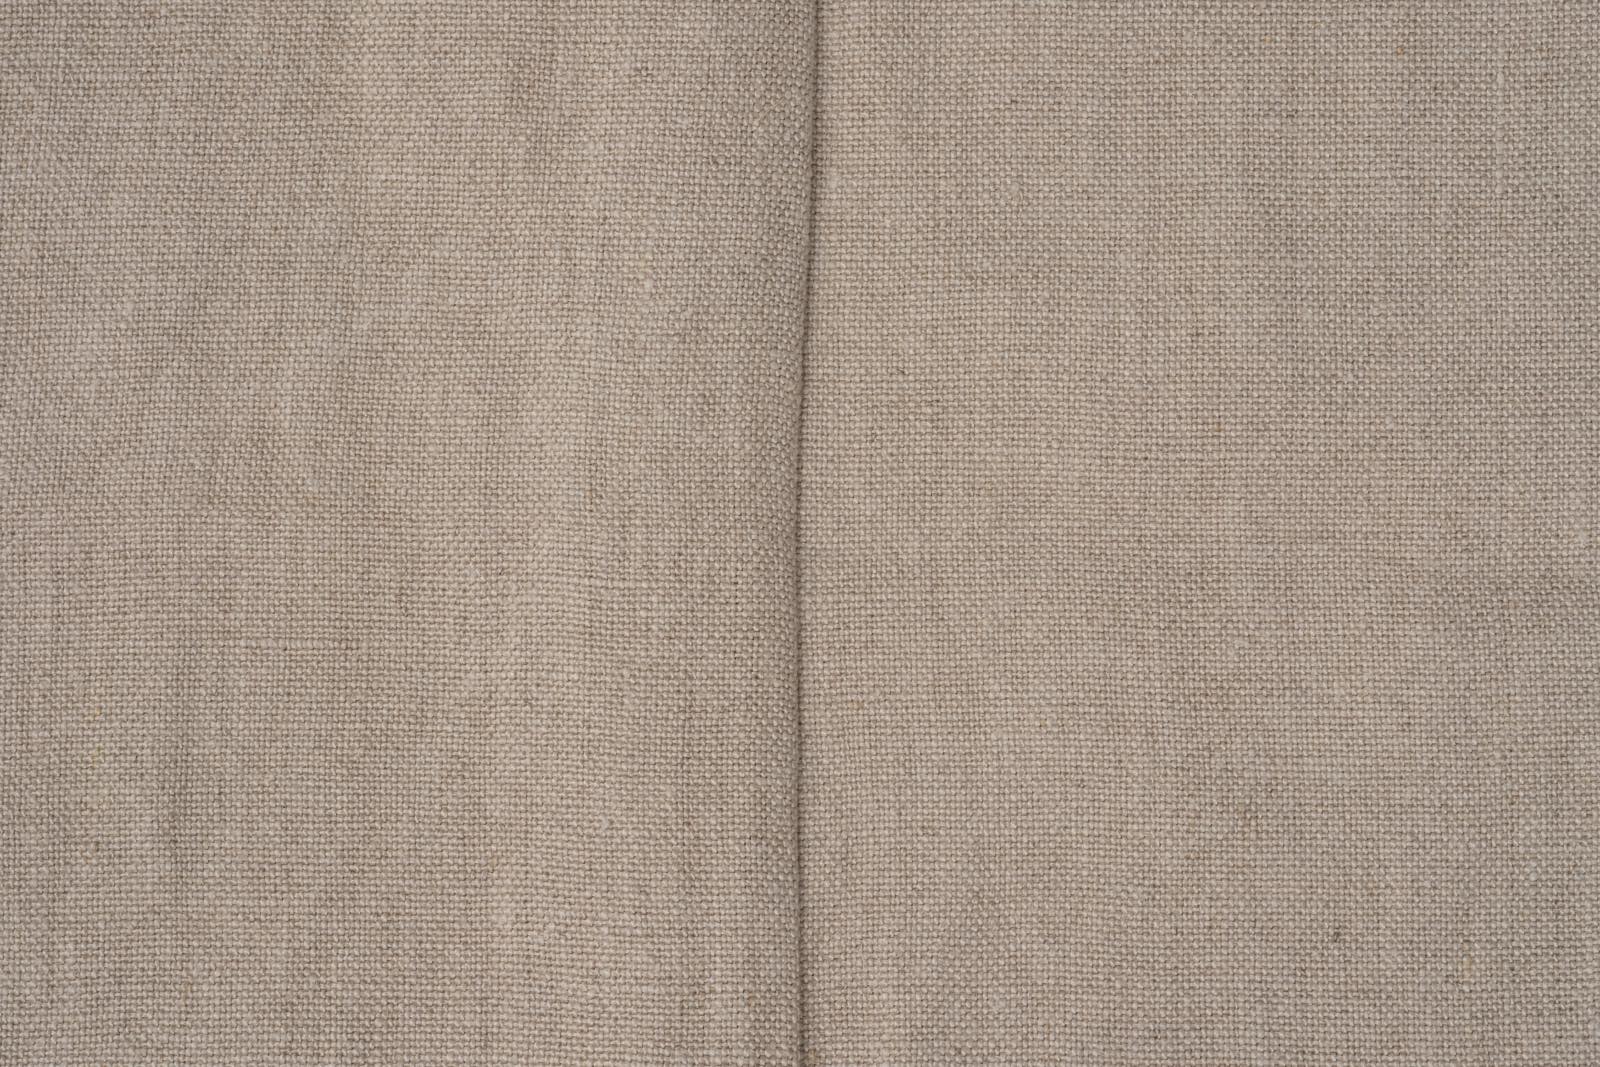 セルヴィッチリネンカーテン フラット スタイル ナチュラル DW-CB005-02-G114 1.5巾と2巾には1カ所、2.5巾と3巾には2カ所にこのような継ぎ目がでます